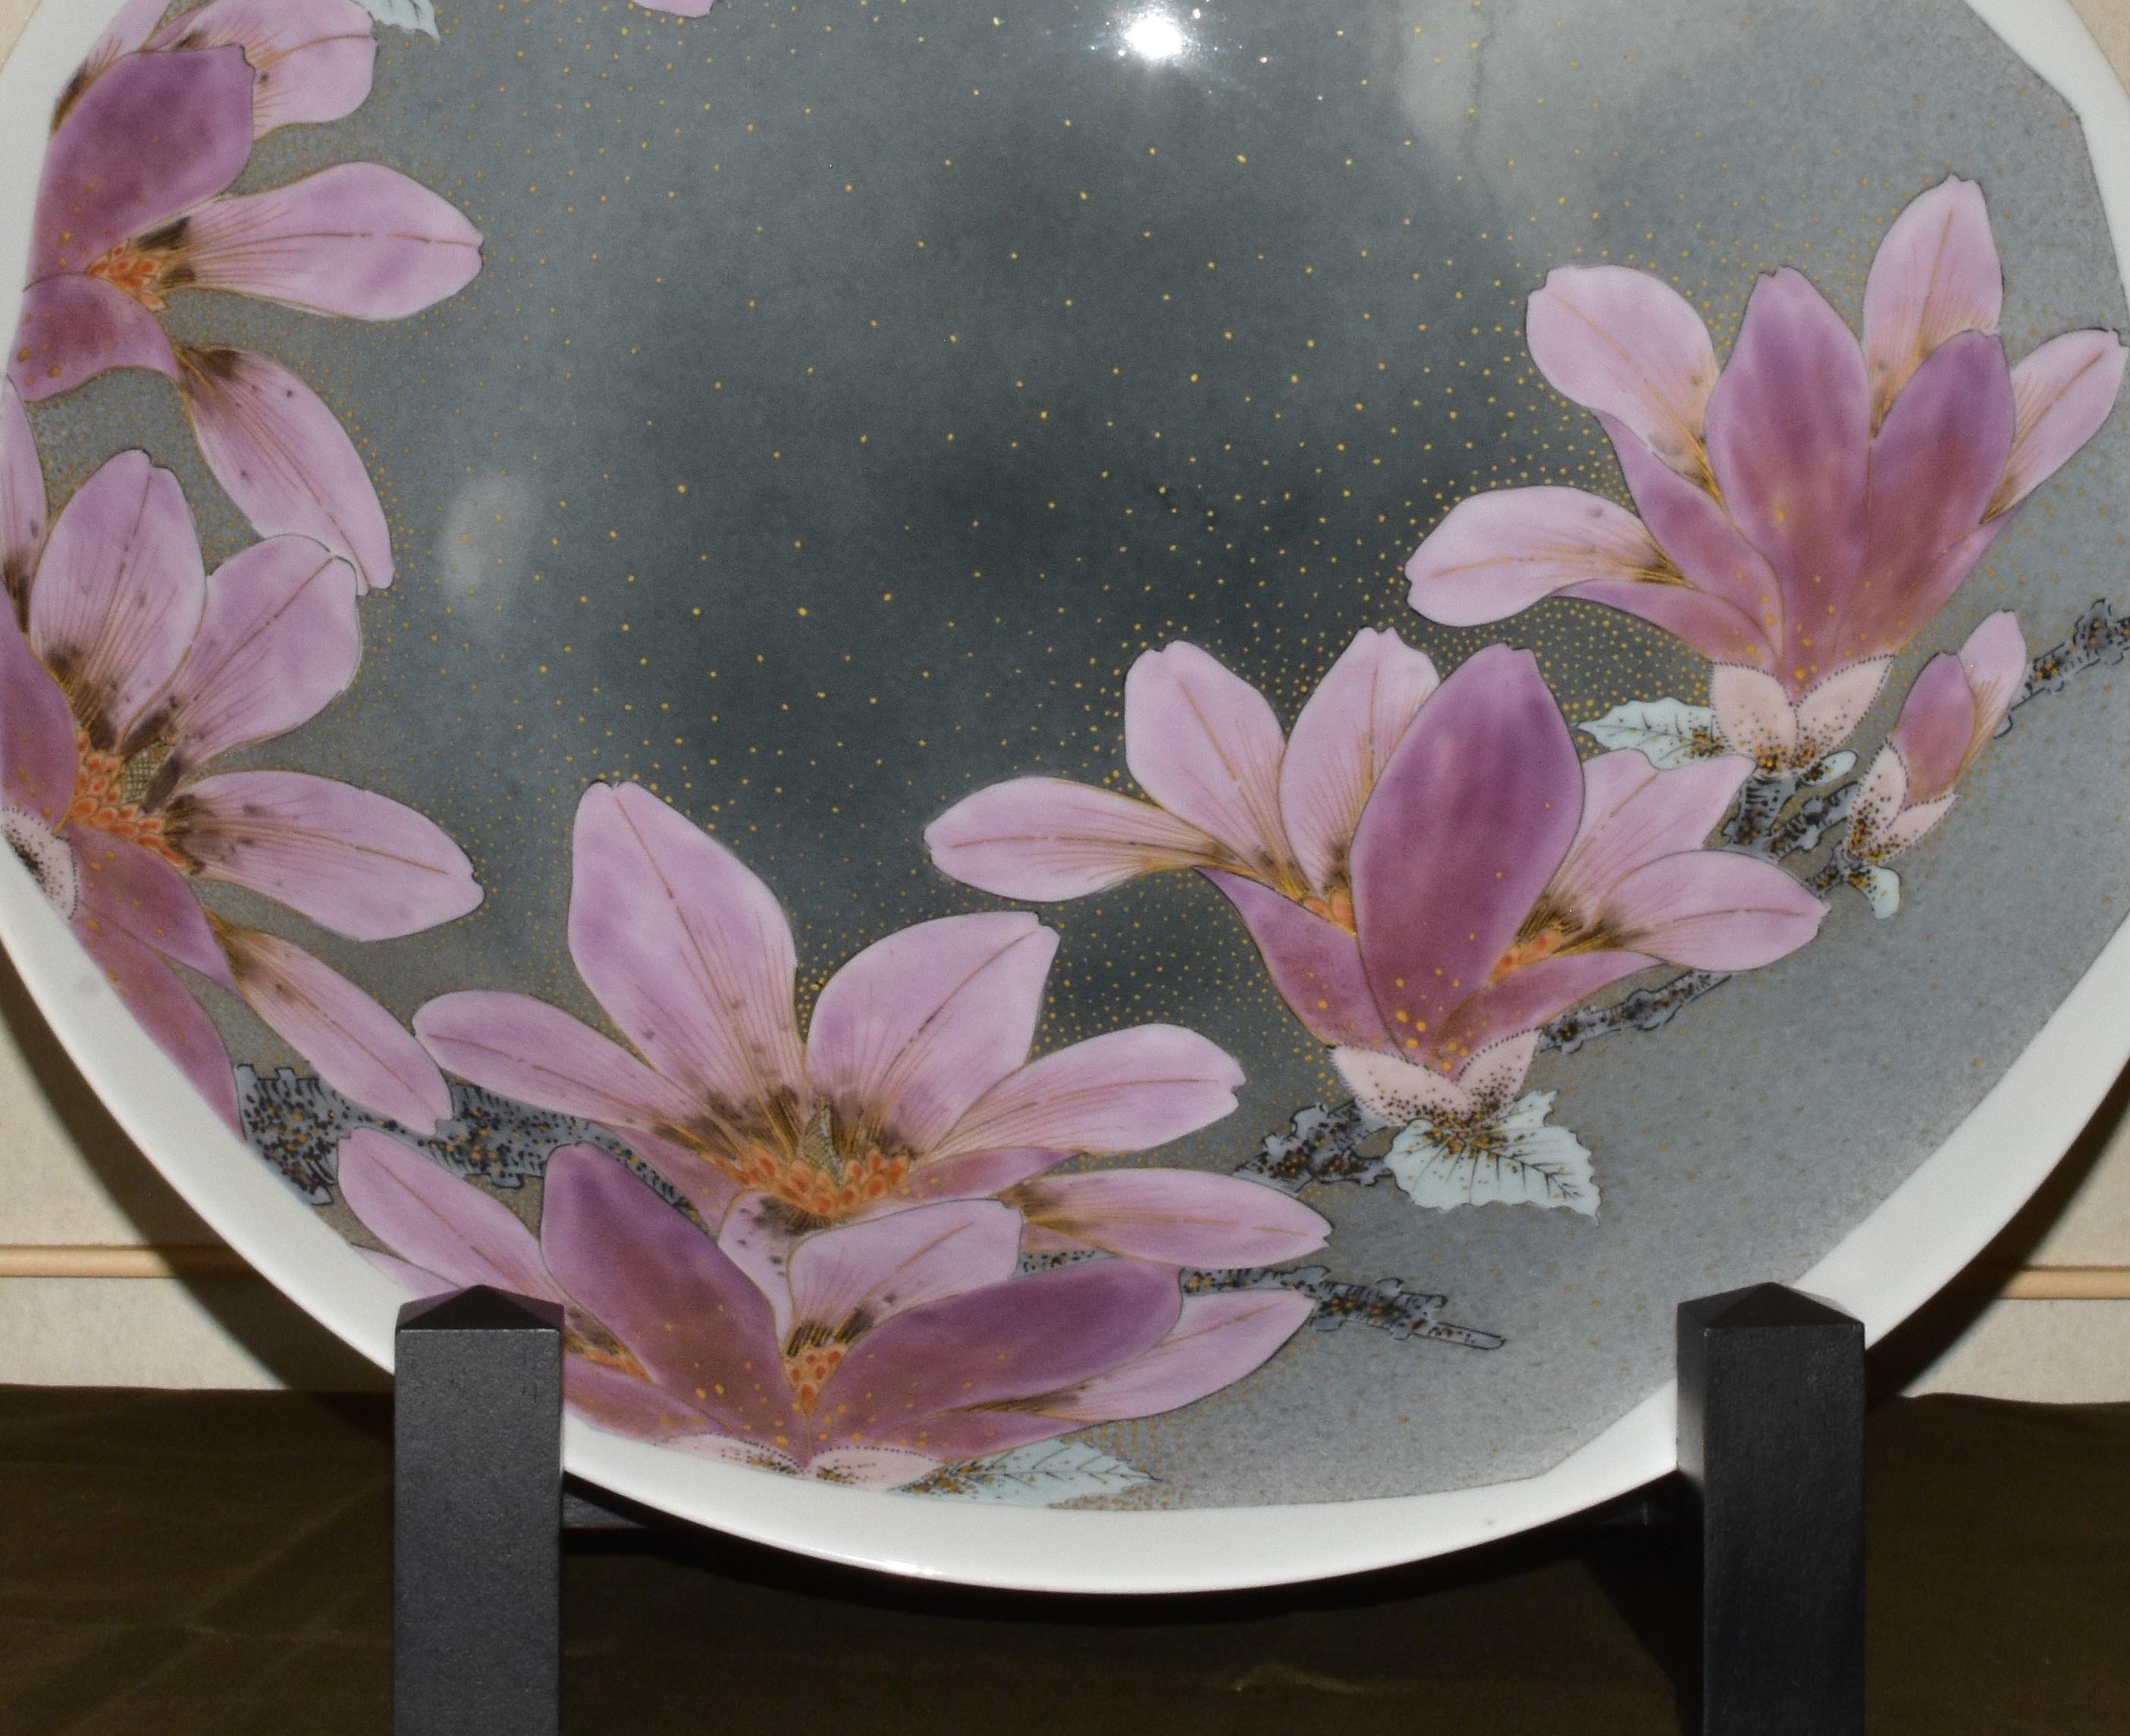 Außergewöhnliche japanische zeitgenössische Museum-Qualität große dekorative Porzellan tief Ladegerät / Tafelaufsatz dramatisch handbemalt zeigt Fett rosa / lila Magnolienblumen in voller Blüte vor einem schönen Hintergrund der atemberaubenden